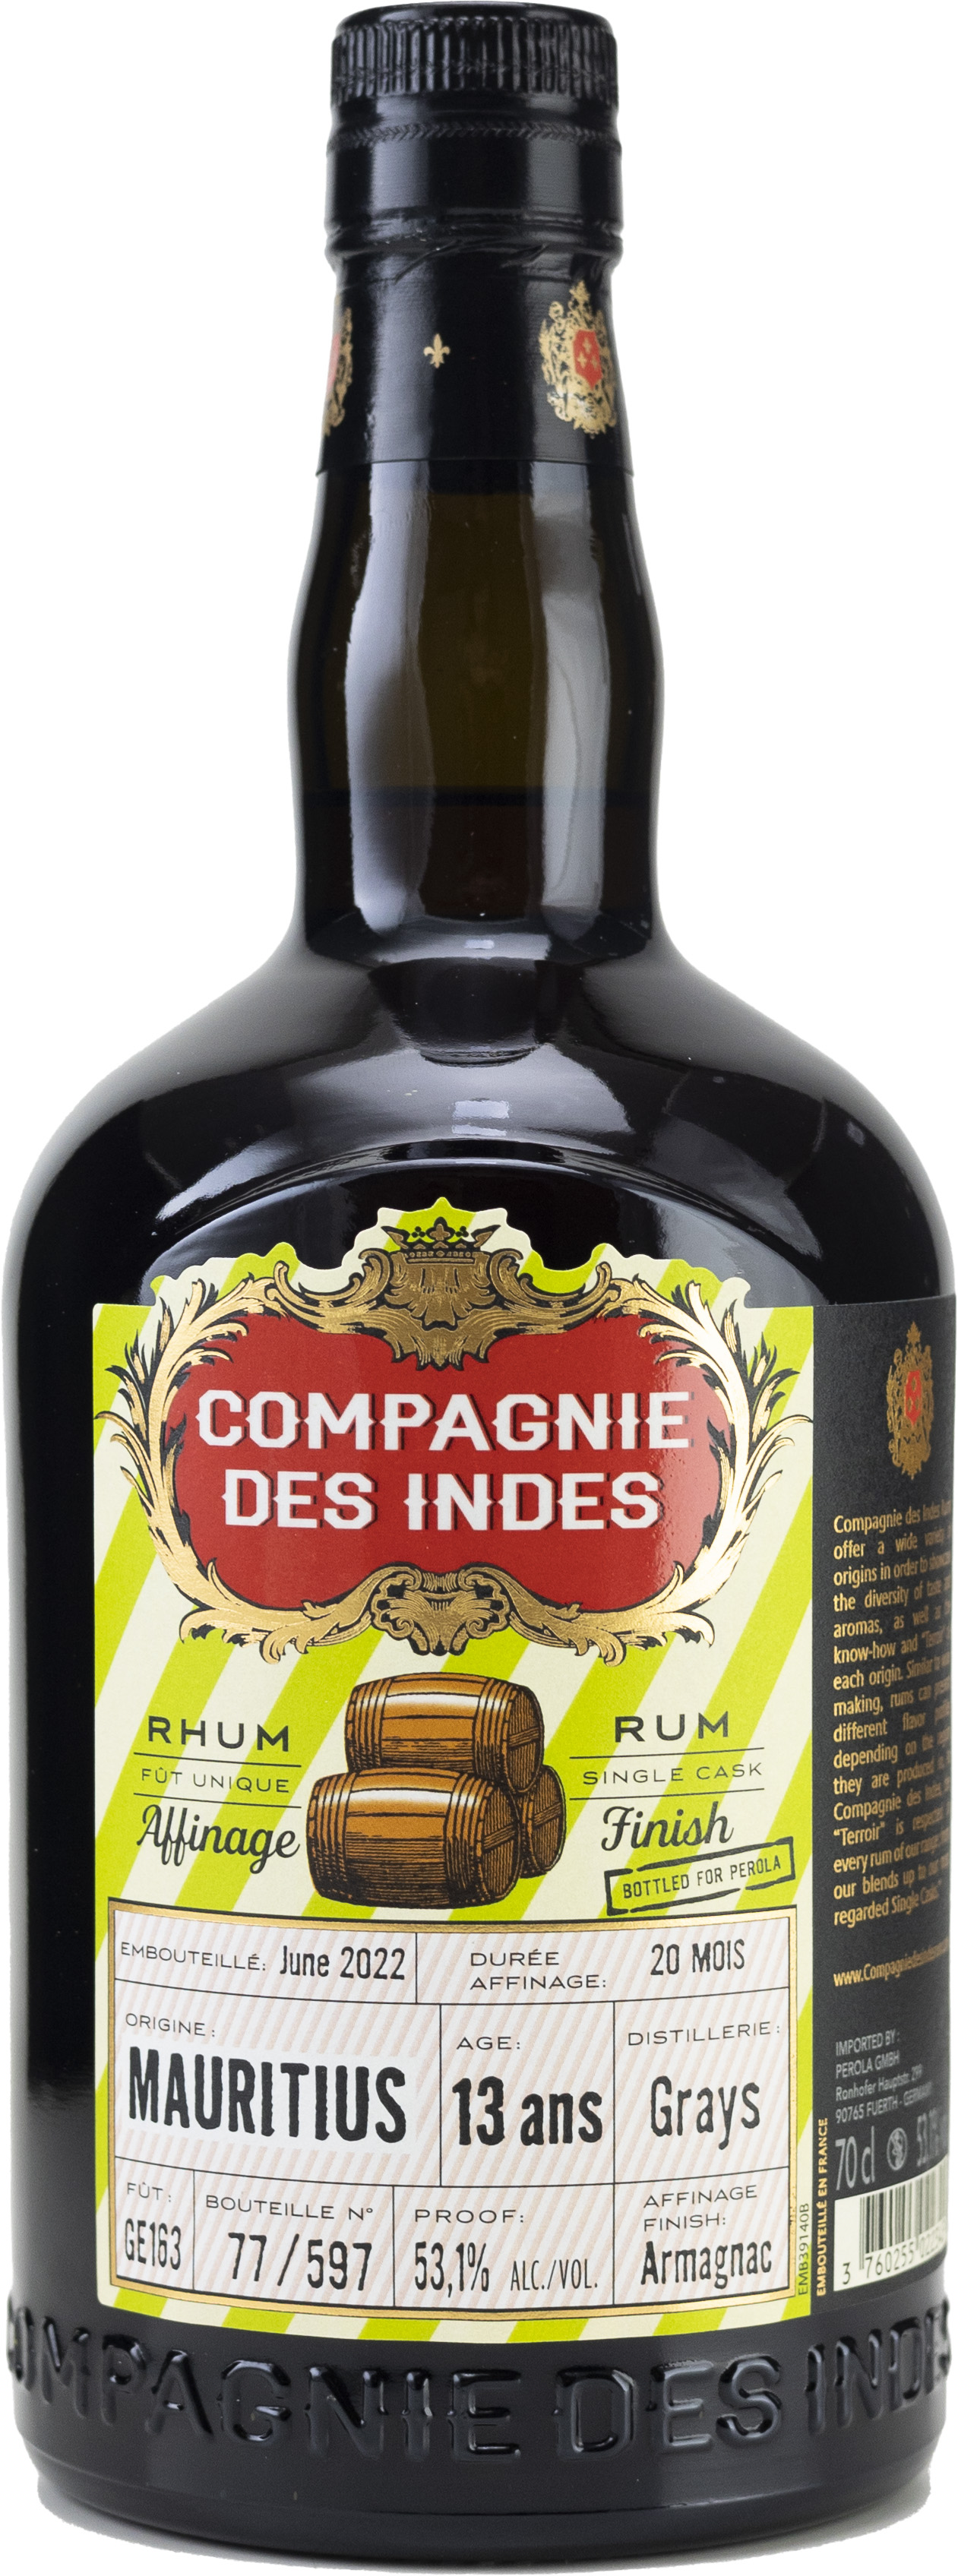 CDI Mauritius 13 Jahre Grays Ex Armagnac Rum 53,1% 0,7l